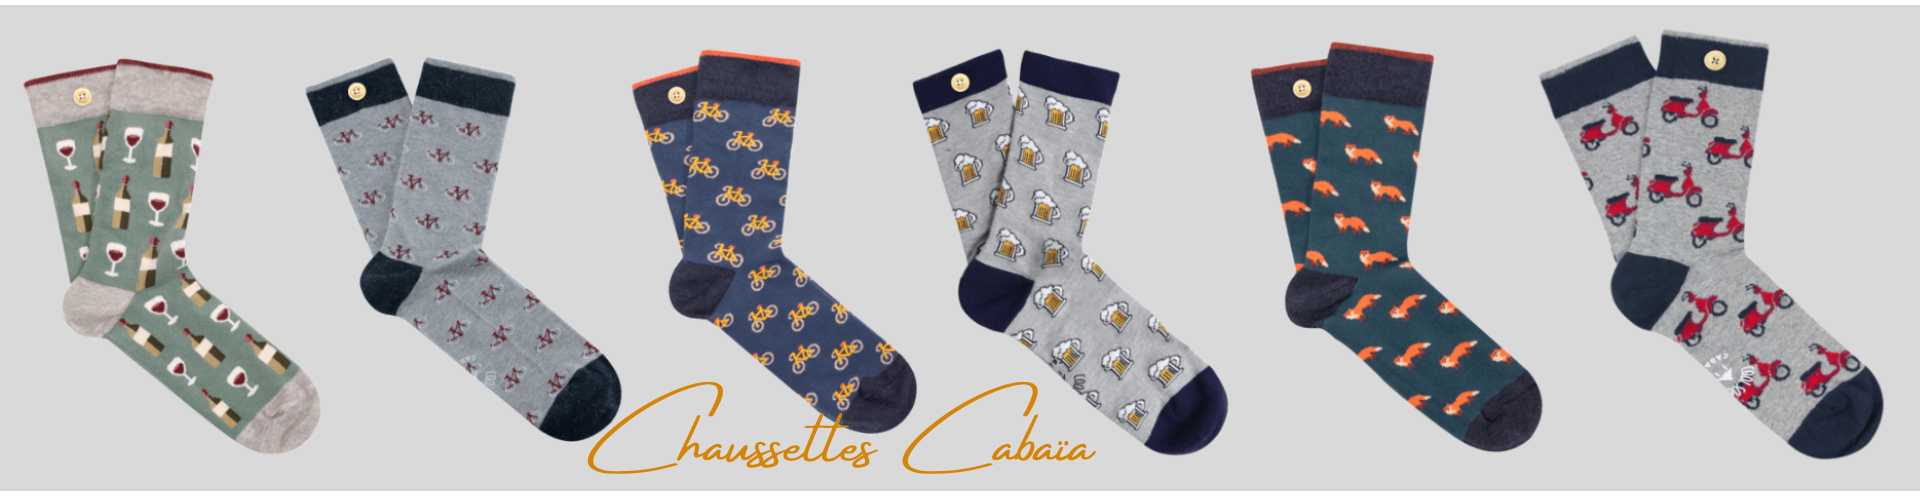 Cabaïa socks